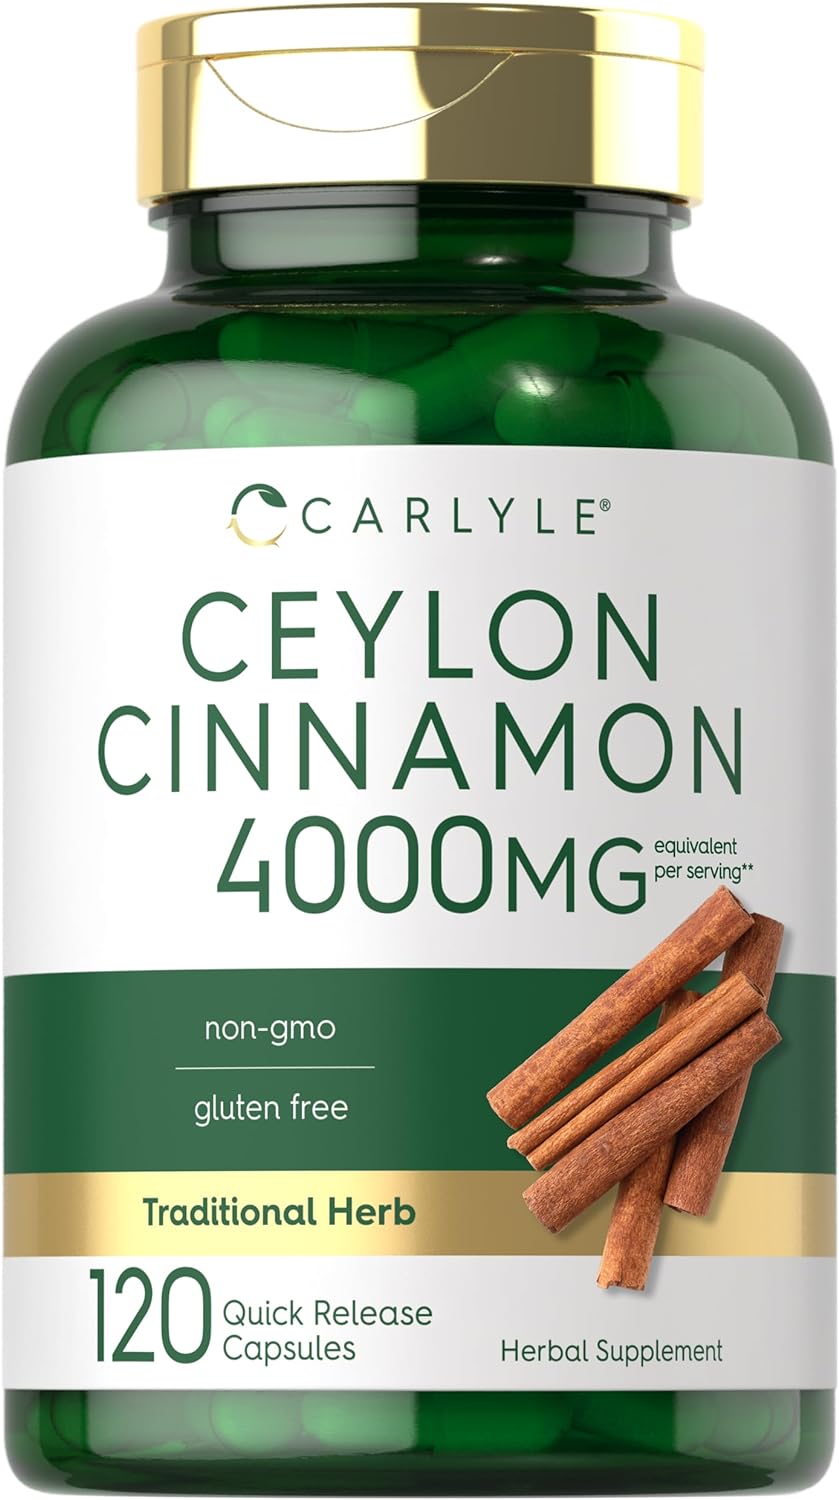 Carlyle Ceylon Cinnamon Capsules | 120 Count | 60 Servings | Non-GMO and Gluten Free